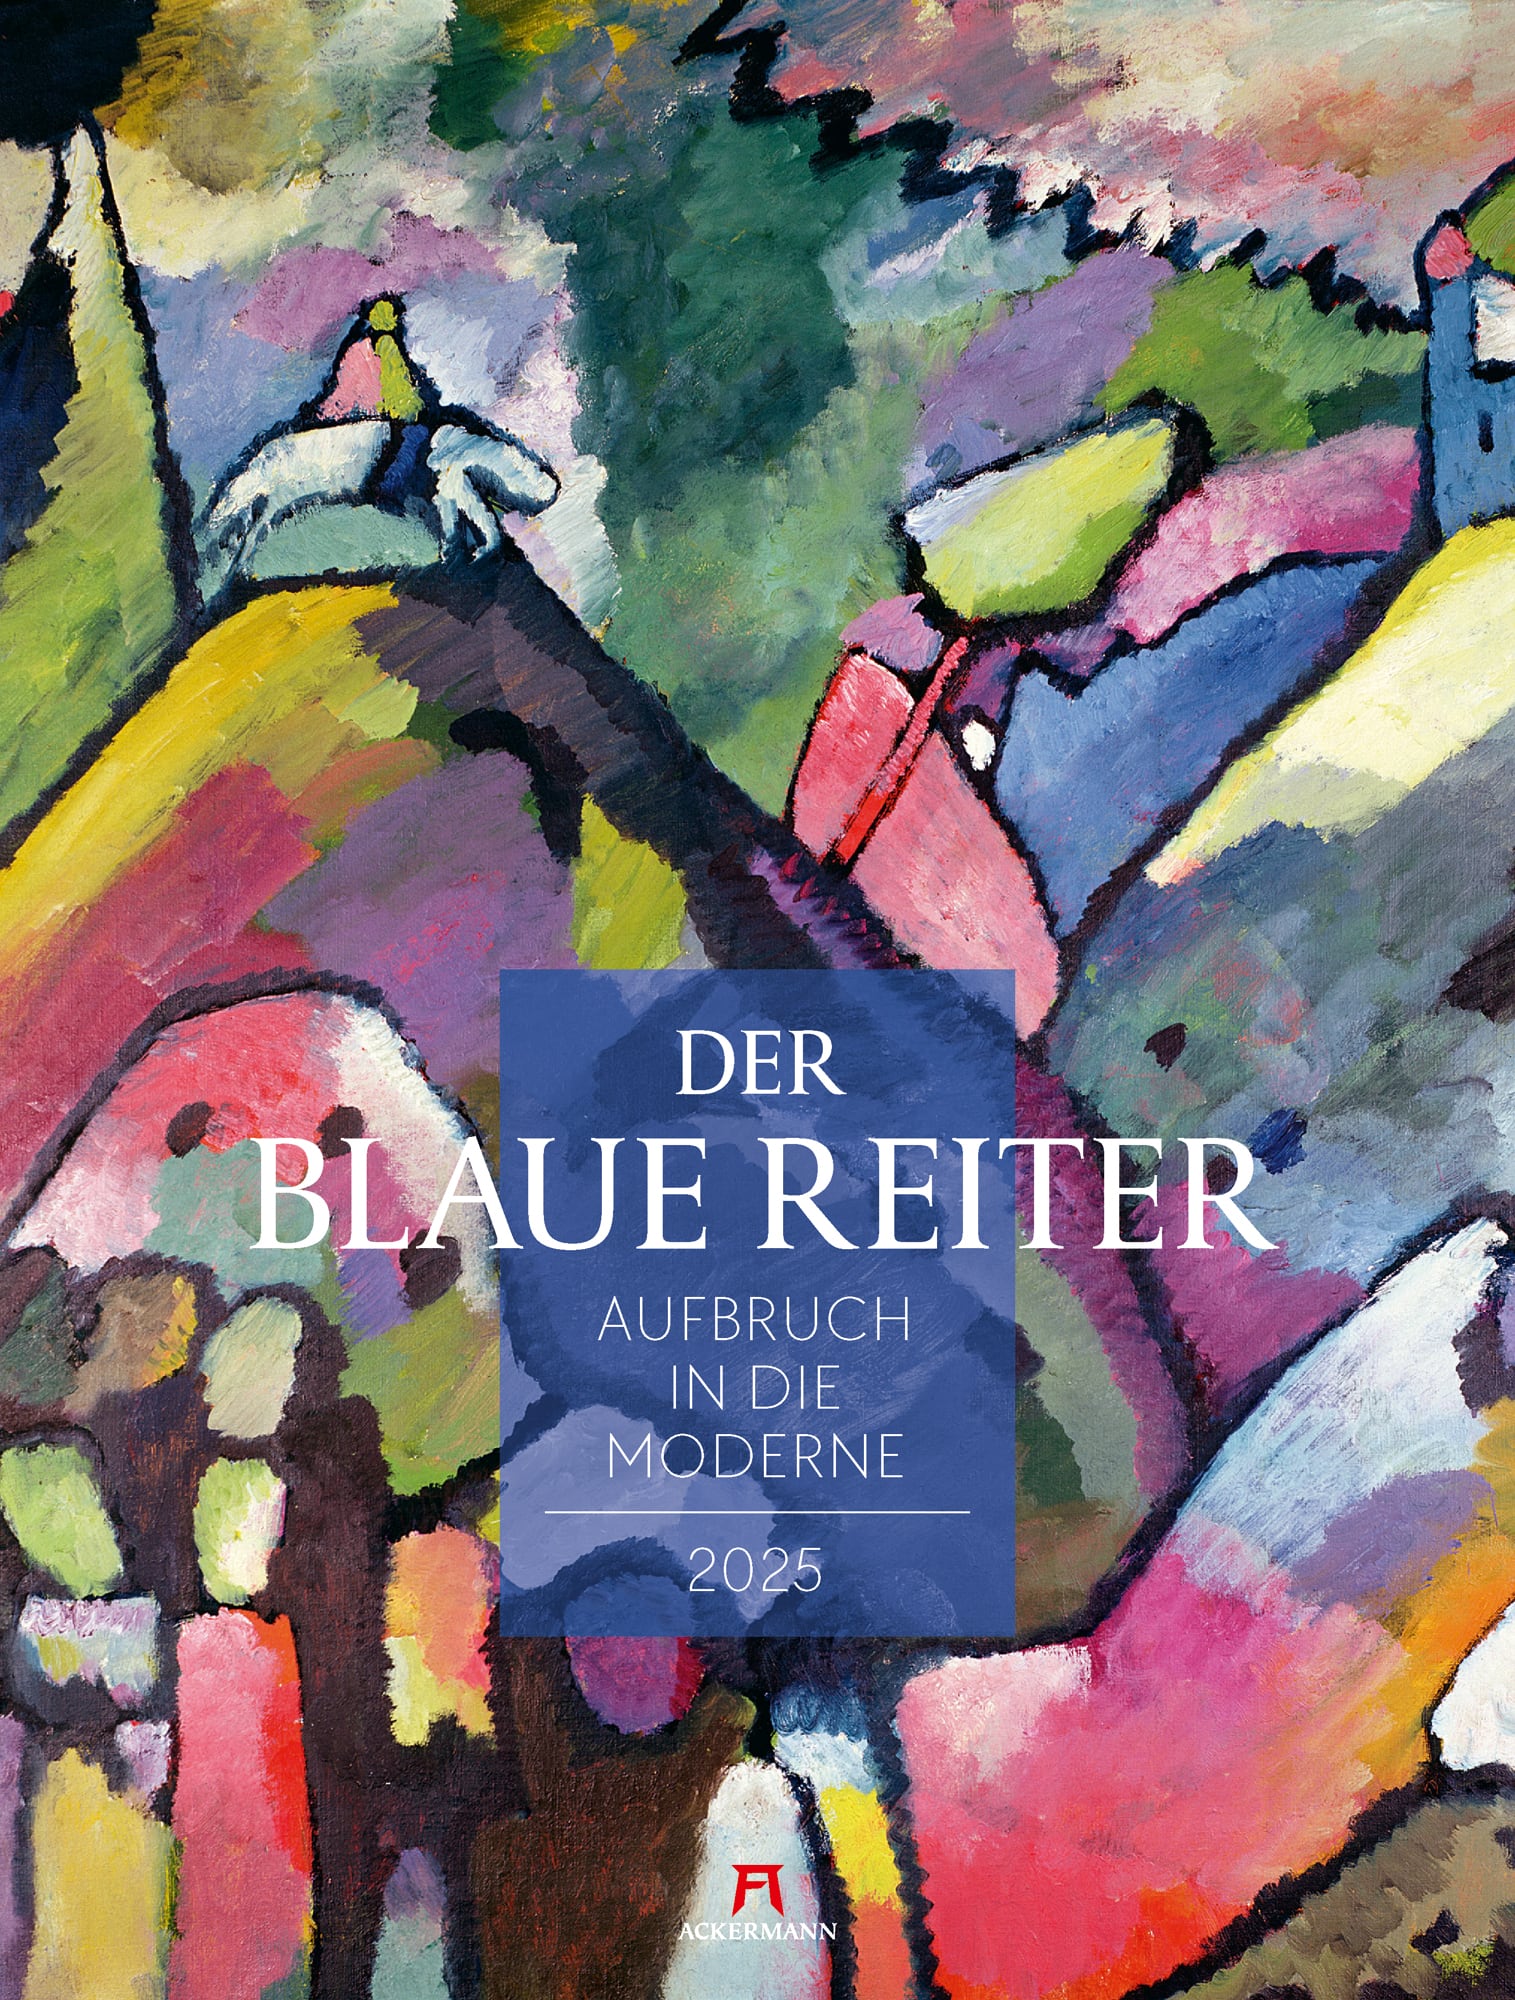 Ackermann Calendar The Blaue Reiter 2025 - Cover Page